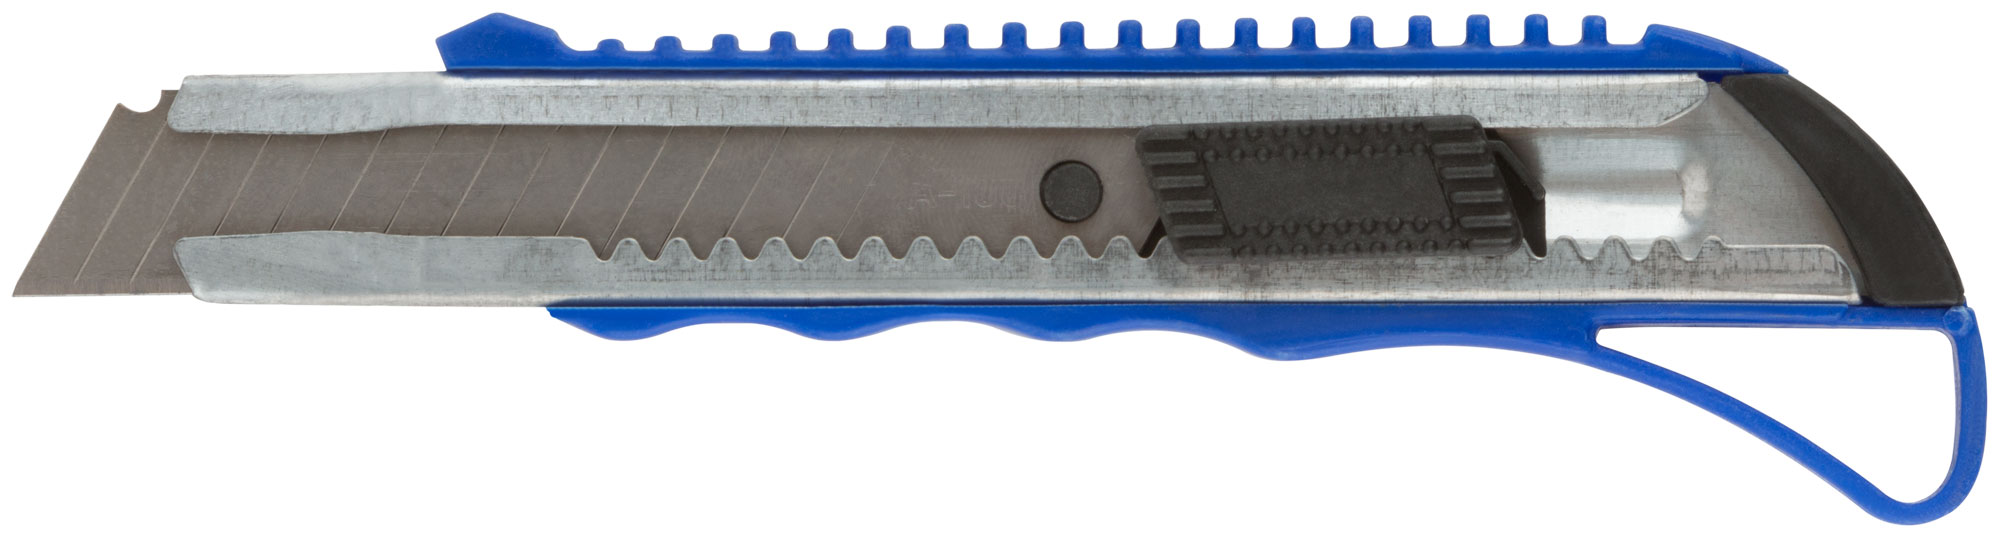 Нож технический MOS пластиковый 18 мм 10193М